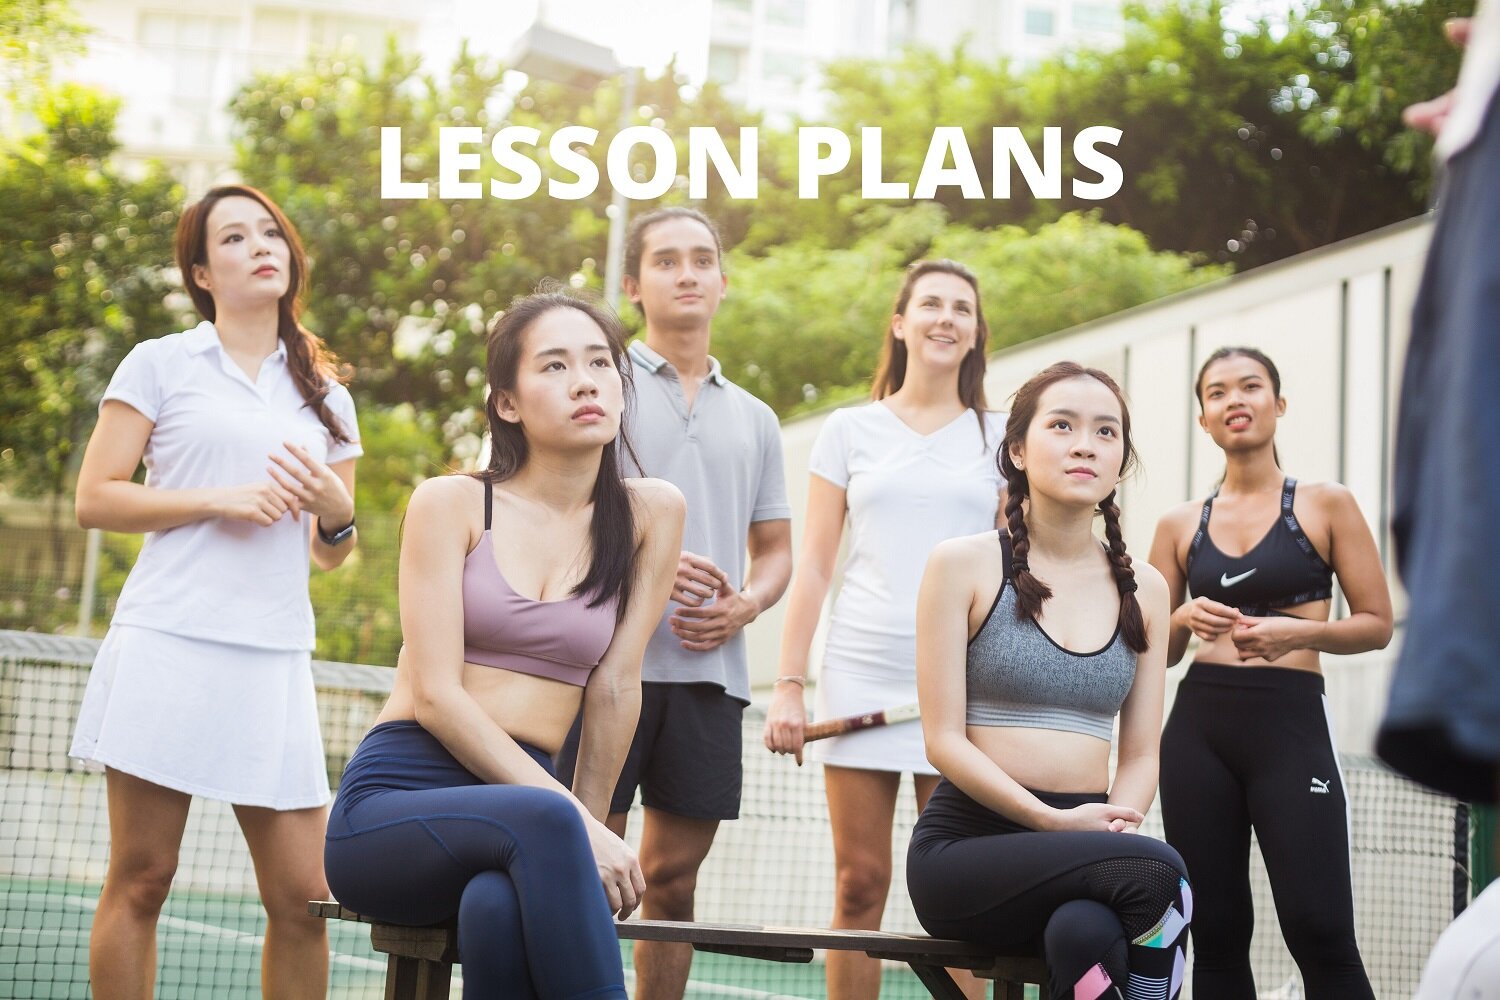 Tennis Lessons Plans